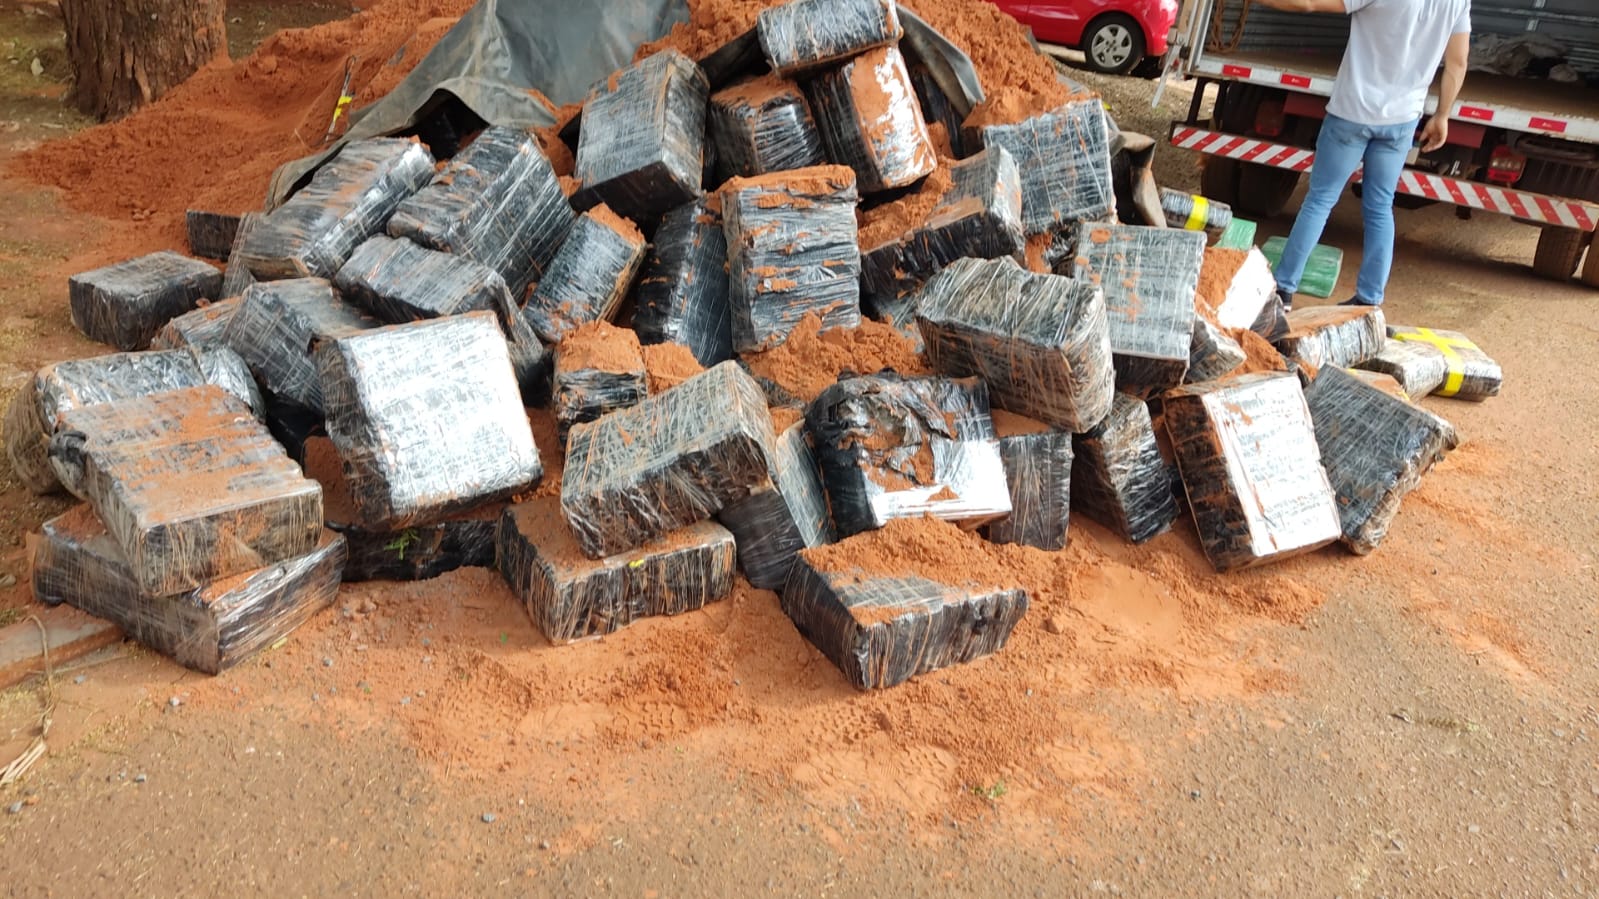 Os policias encontraram as drogas escondida debaixo da areia no caminhão - Fotos: Adilson Domingos 